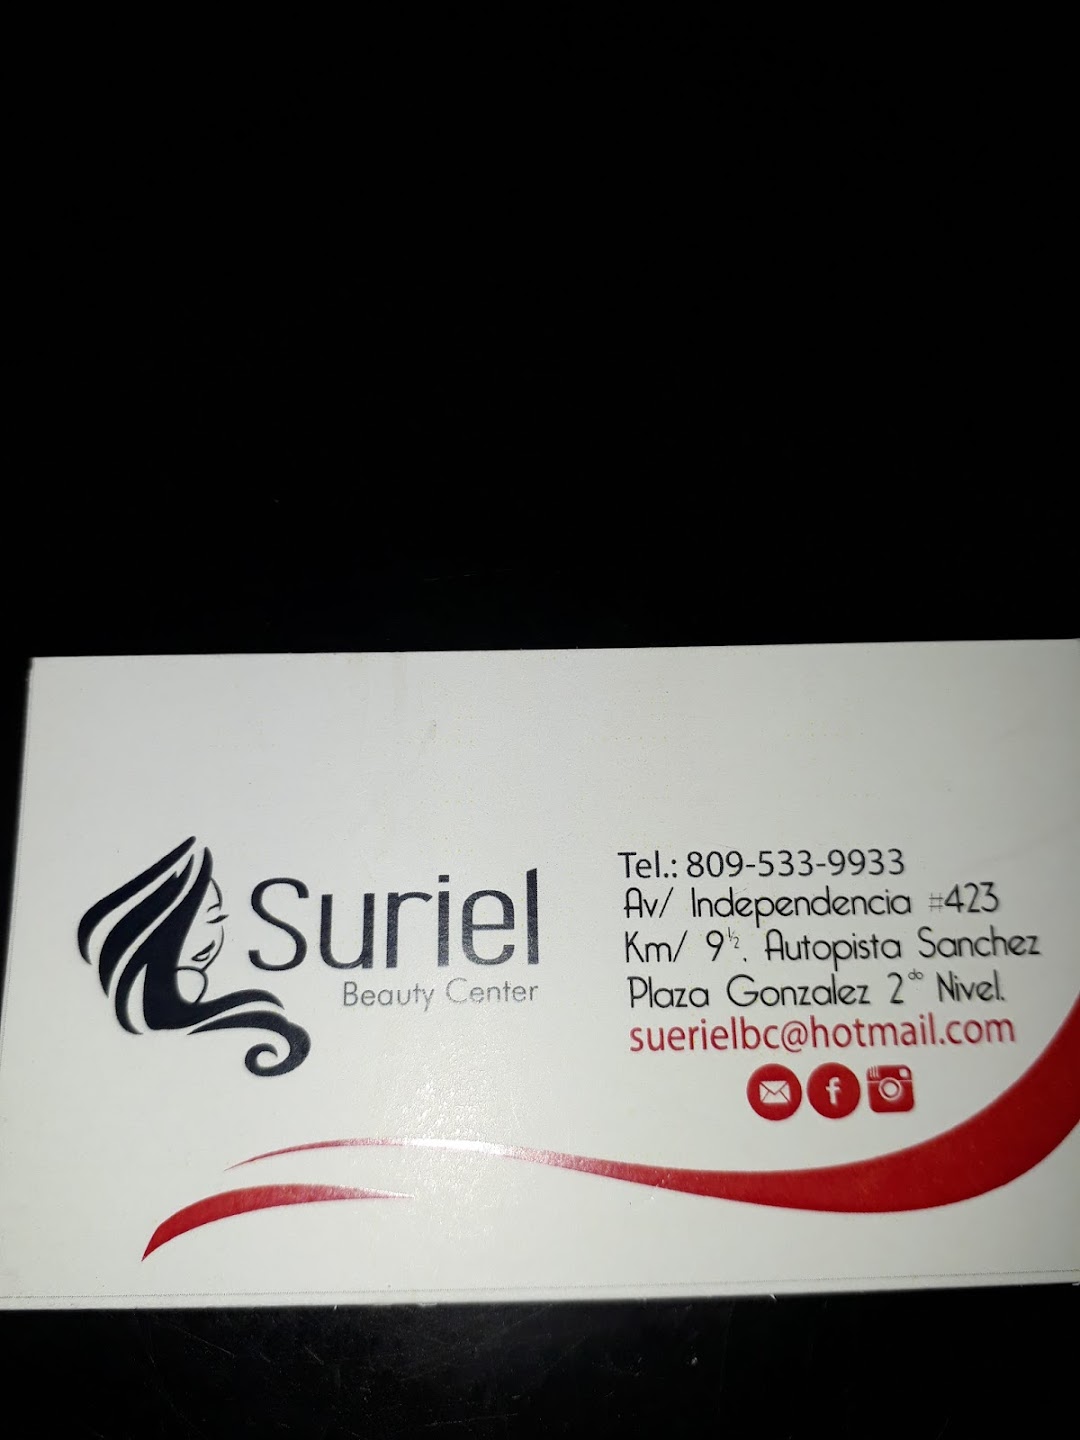 Suriel Beauty Center